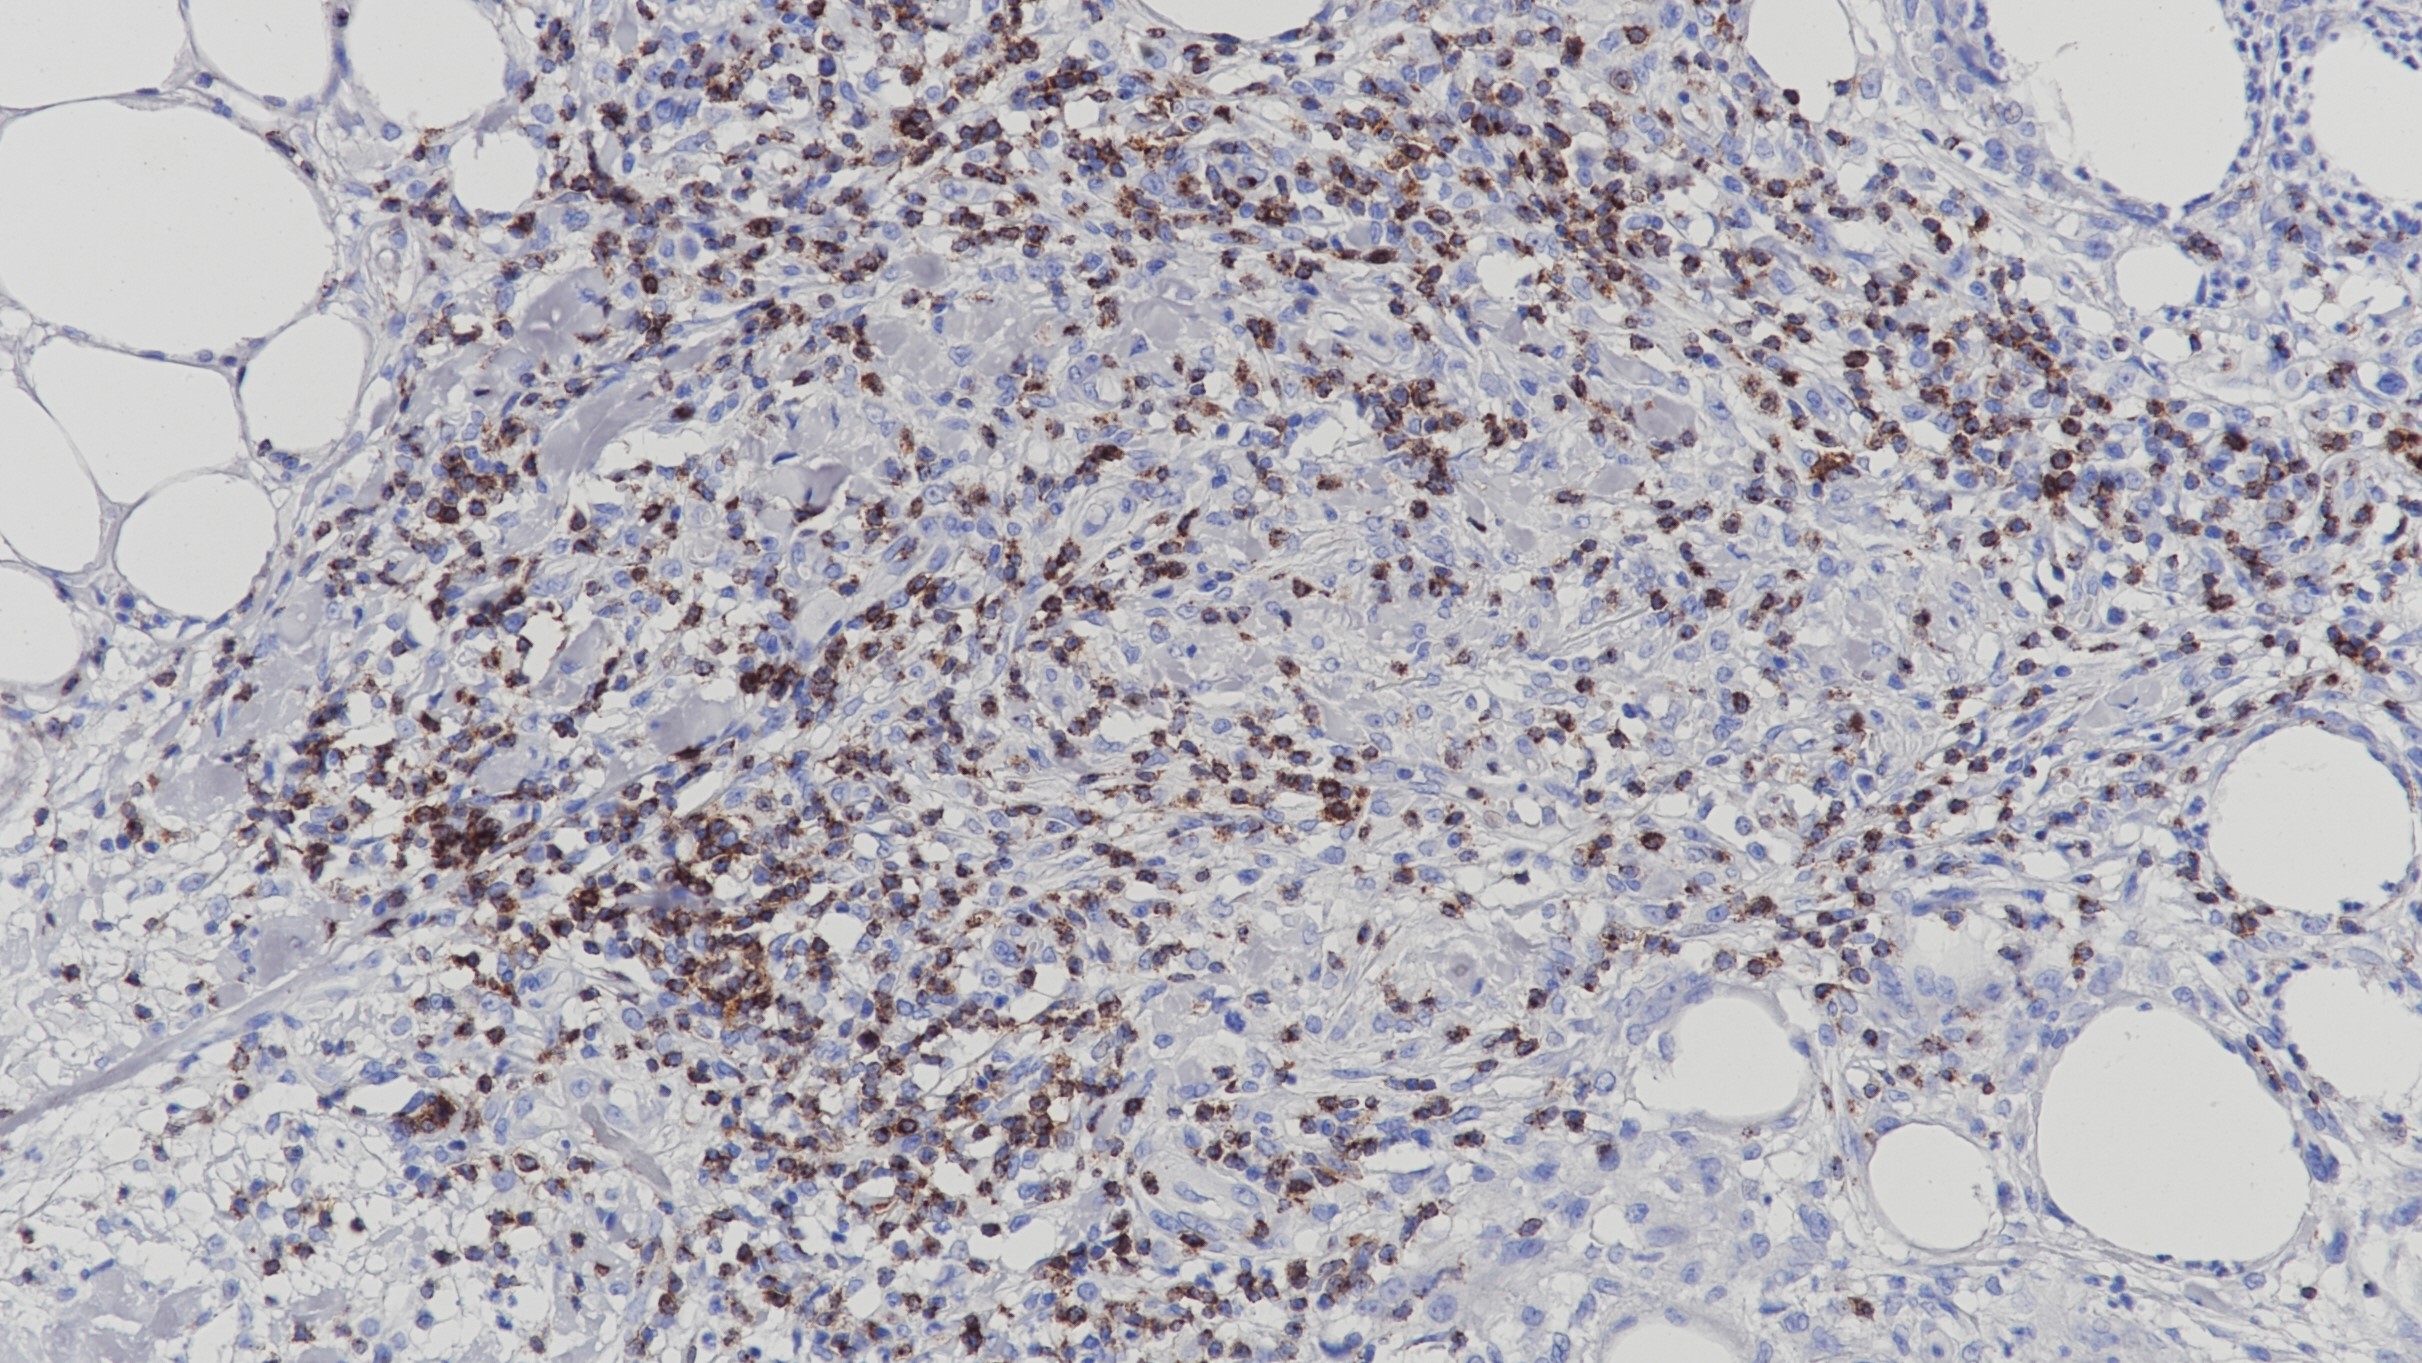 脂膜炎样T细胞淋巴瘤CD2(BP6107)染色